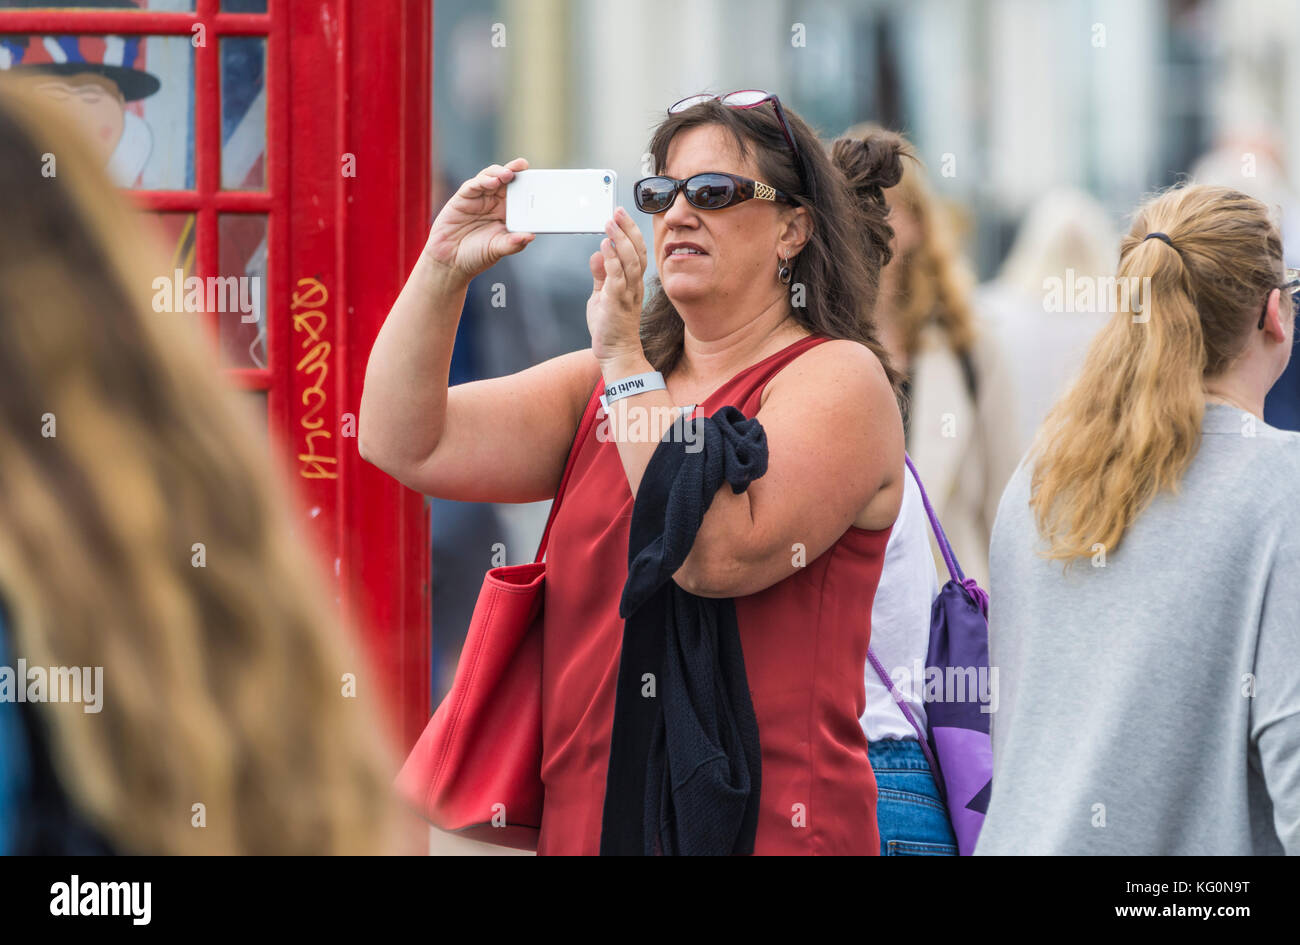 Turista blanca haciendo fotos con una cámara de smartphone en una zona concurrida del Reino Unido. Foto de stock